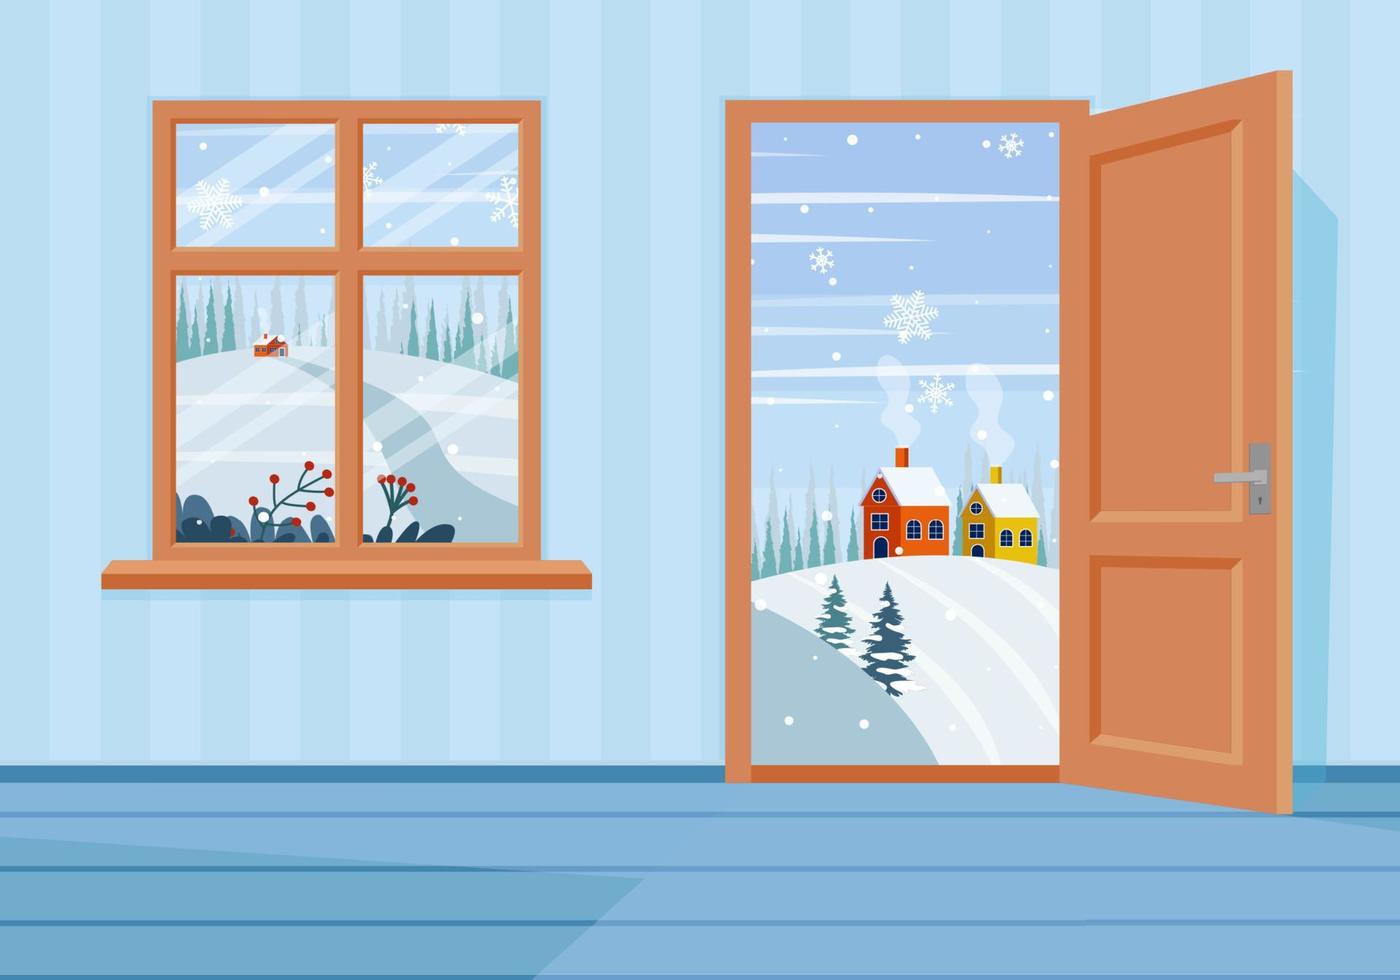 ventana y puertas en el paisaje de invierno. ilustración de vector de estilo de dibujos animados plana.